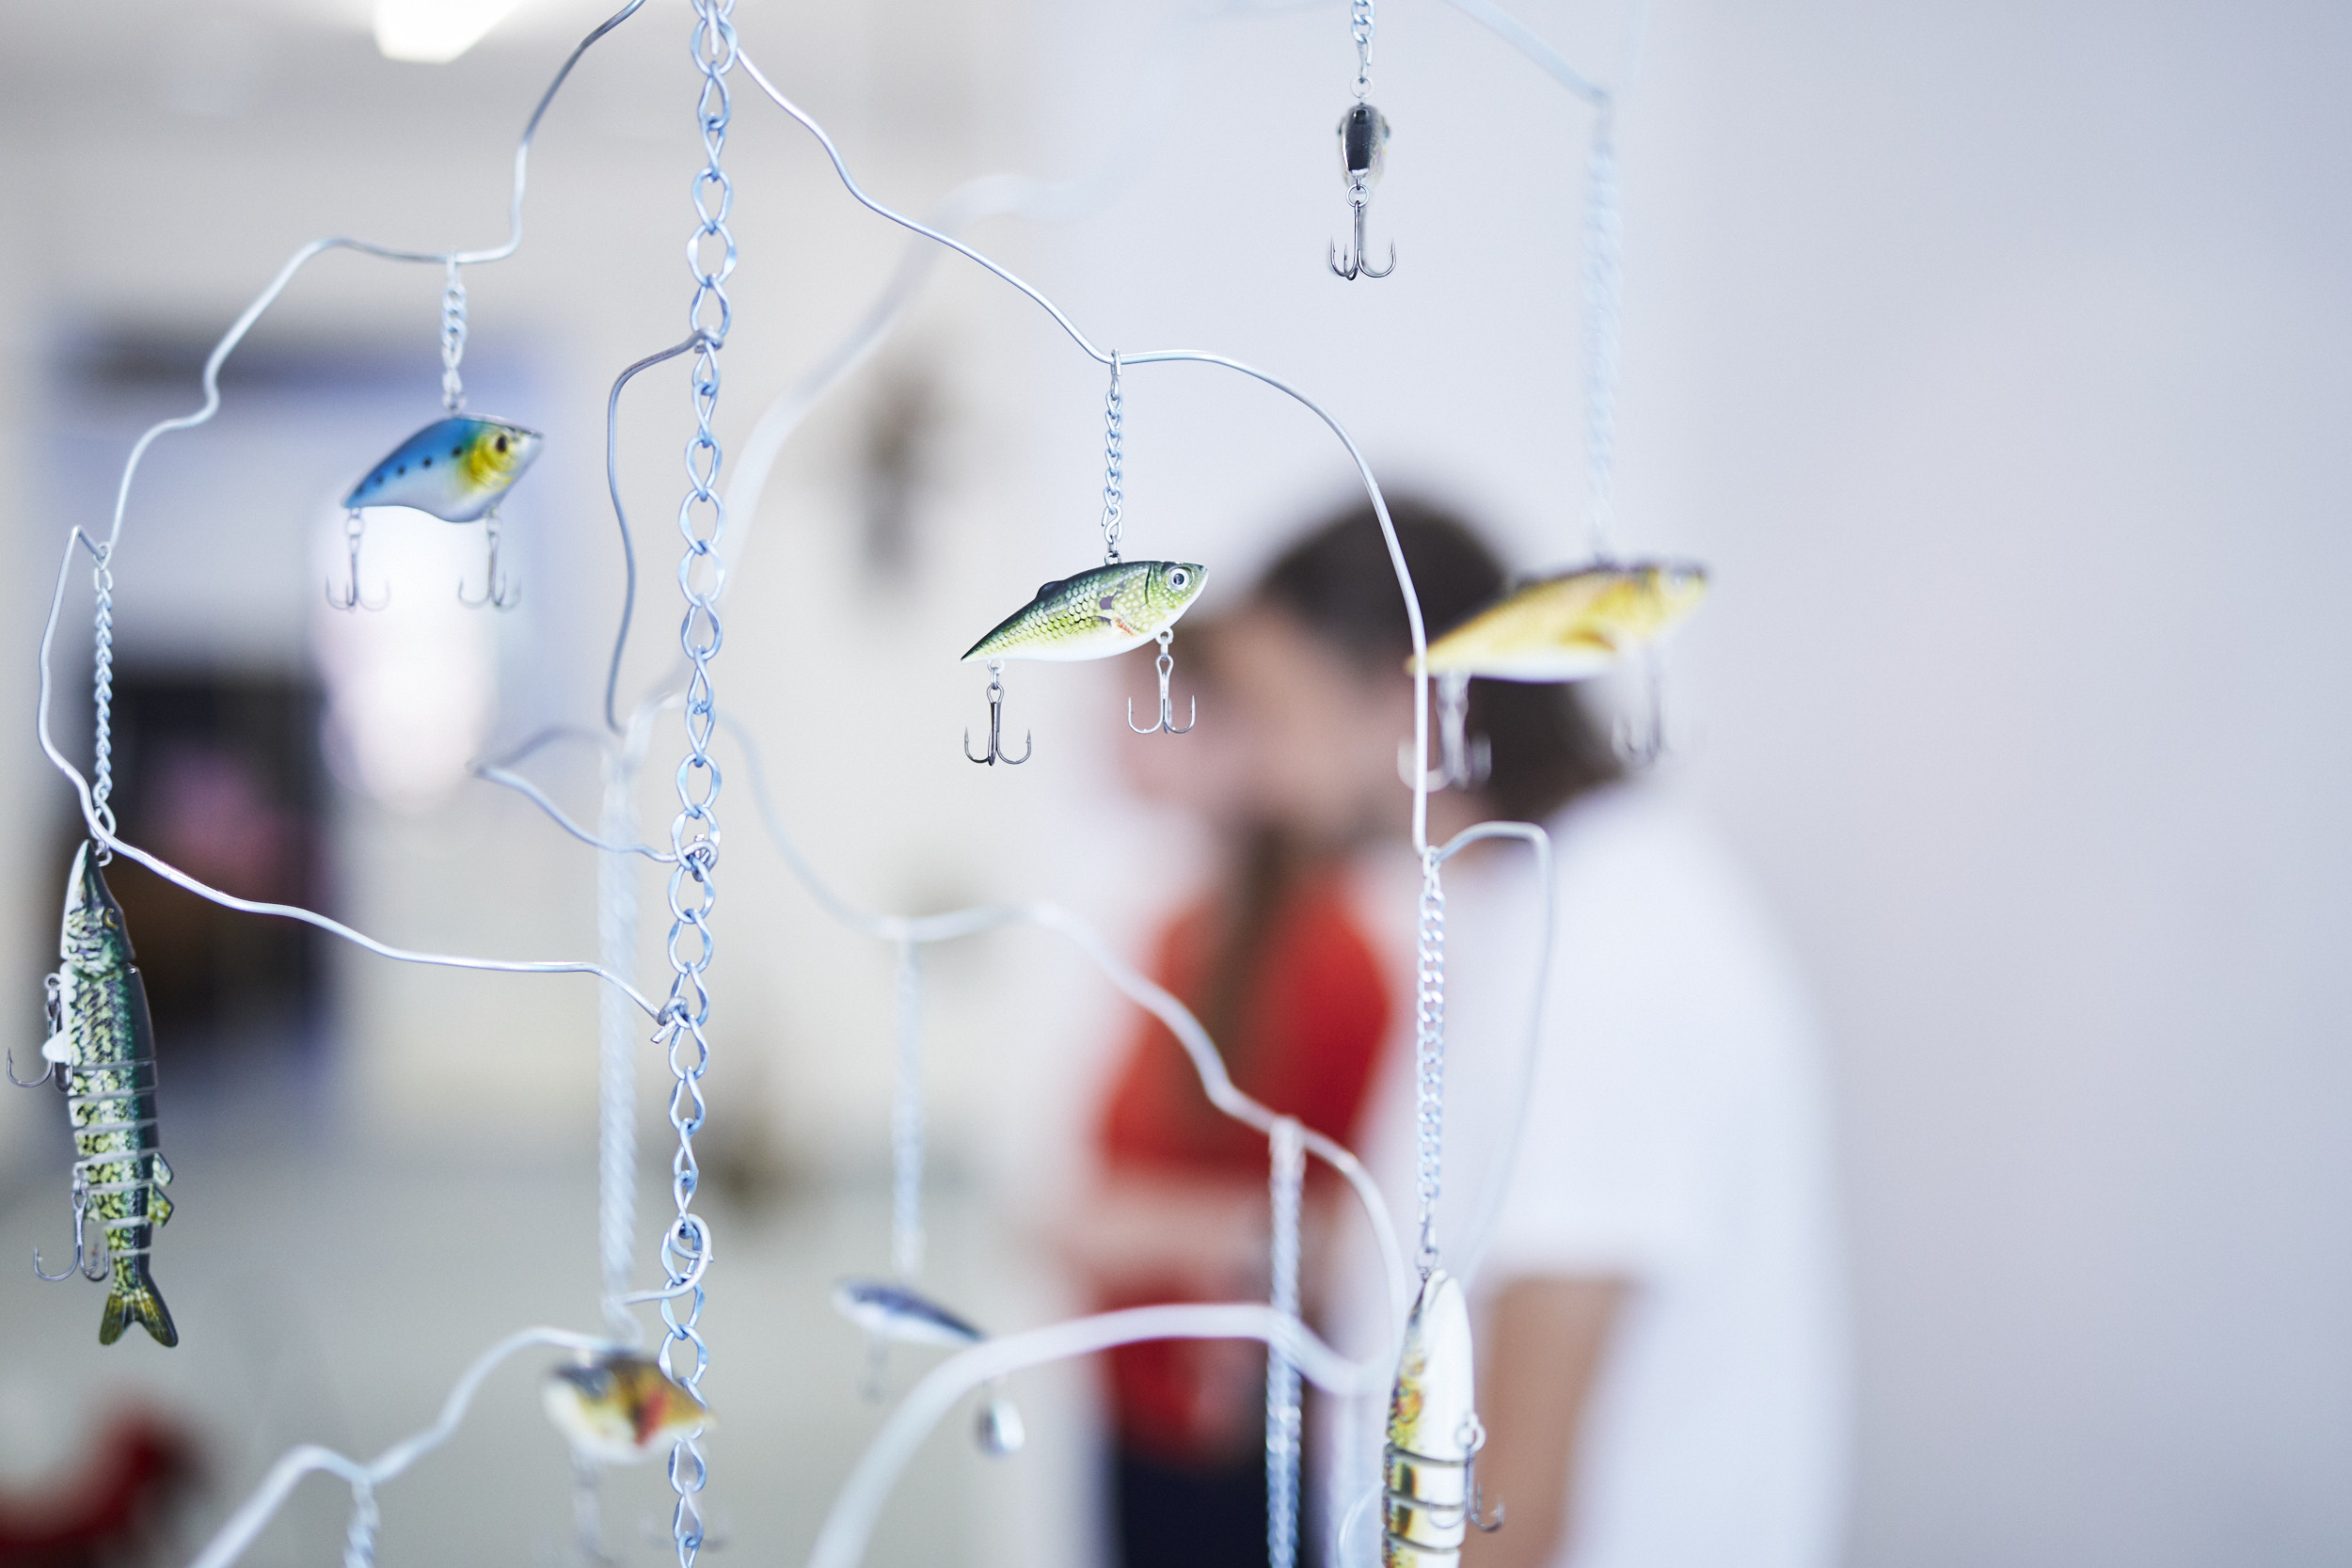 Detailaufnahme eines Mobiles mit Angelhakender Künstlerin Hannah Cooke während einer Ausstellung in Karlsruhe